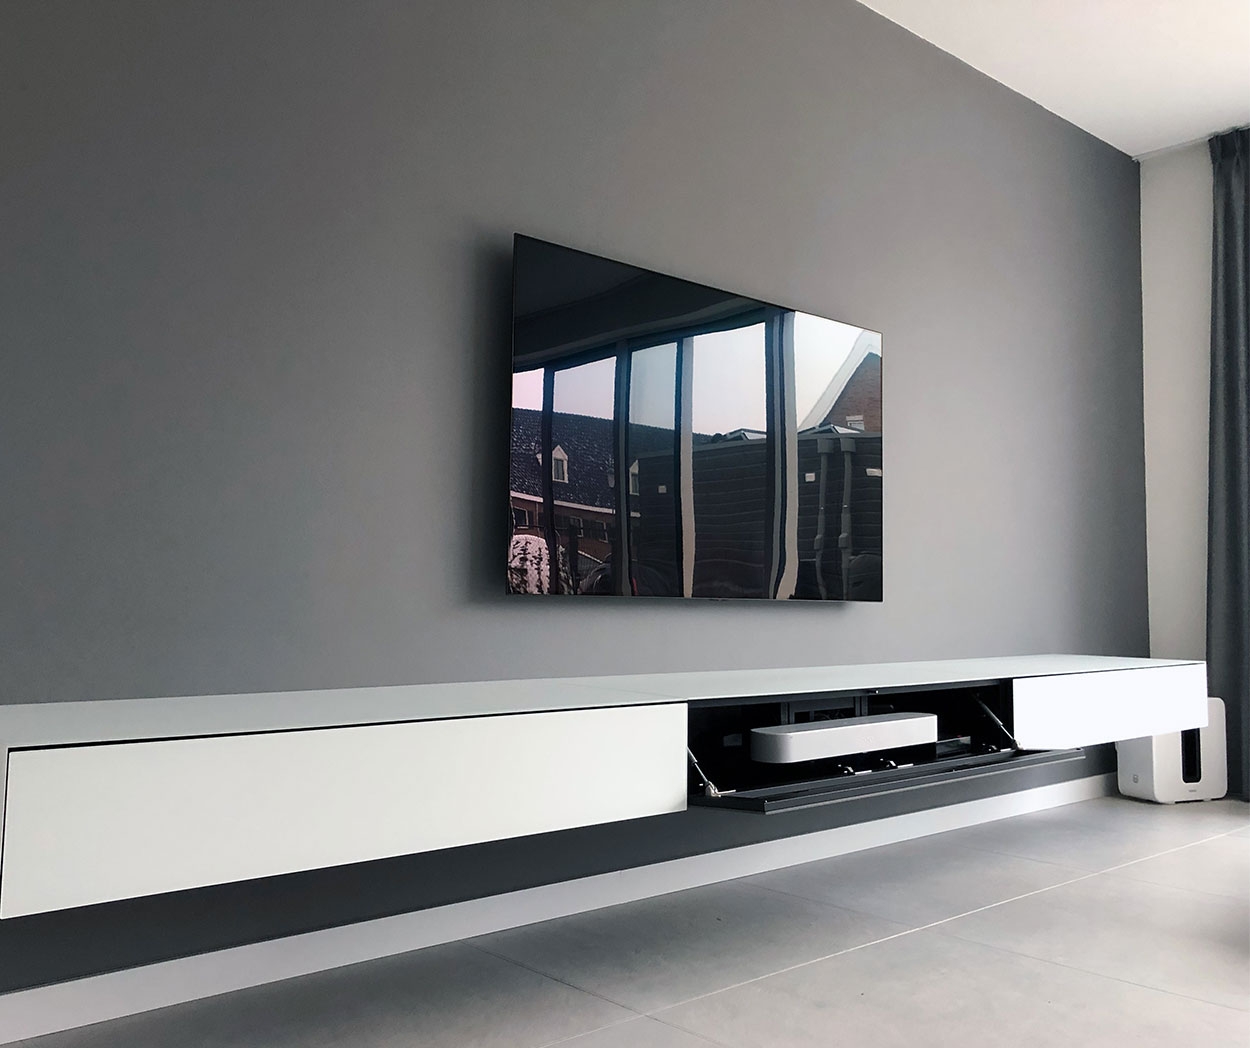 prieel Wereldrecord Guinness Book doen alsof Spectral tv meubels met speakerdoek - Spectral.nl